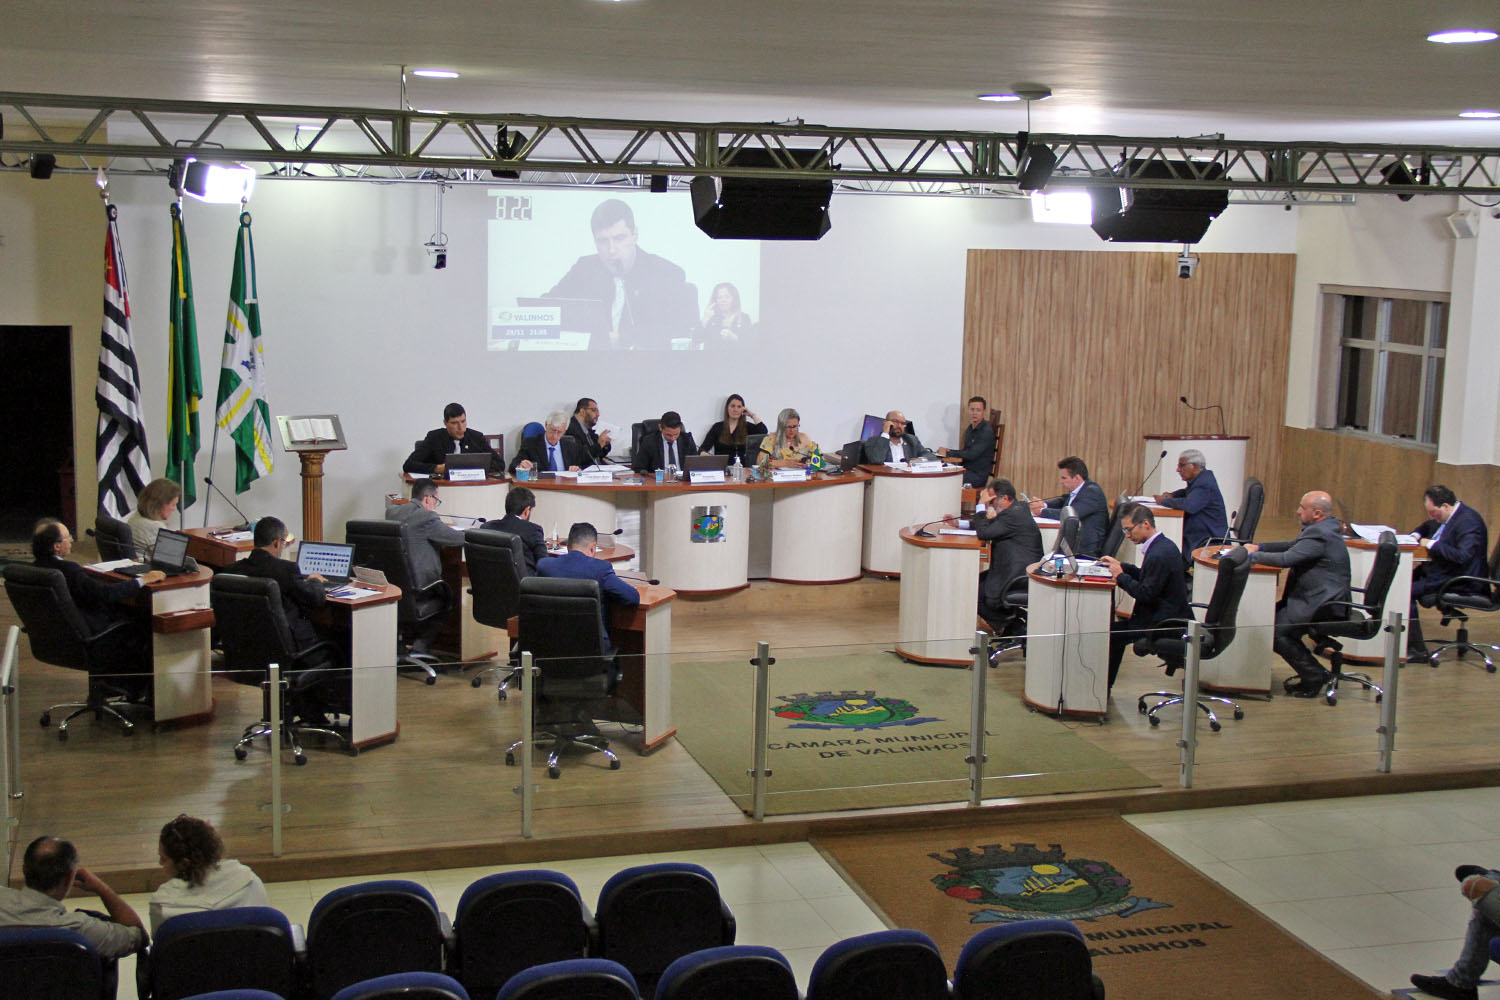 #PraCegoVer: foto mostra o plenário da Câmara visto de cima, com os vereadores sentados em seus lugares.